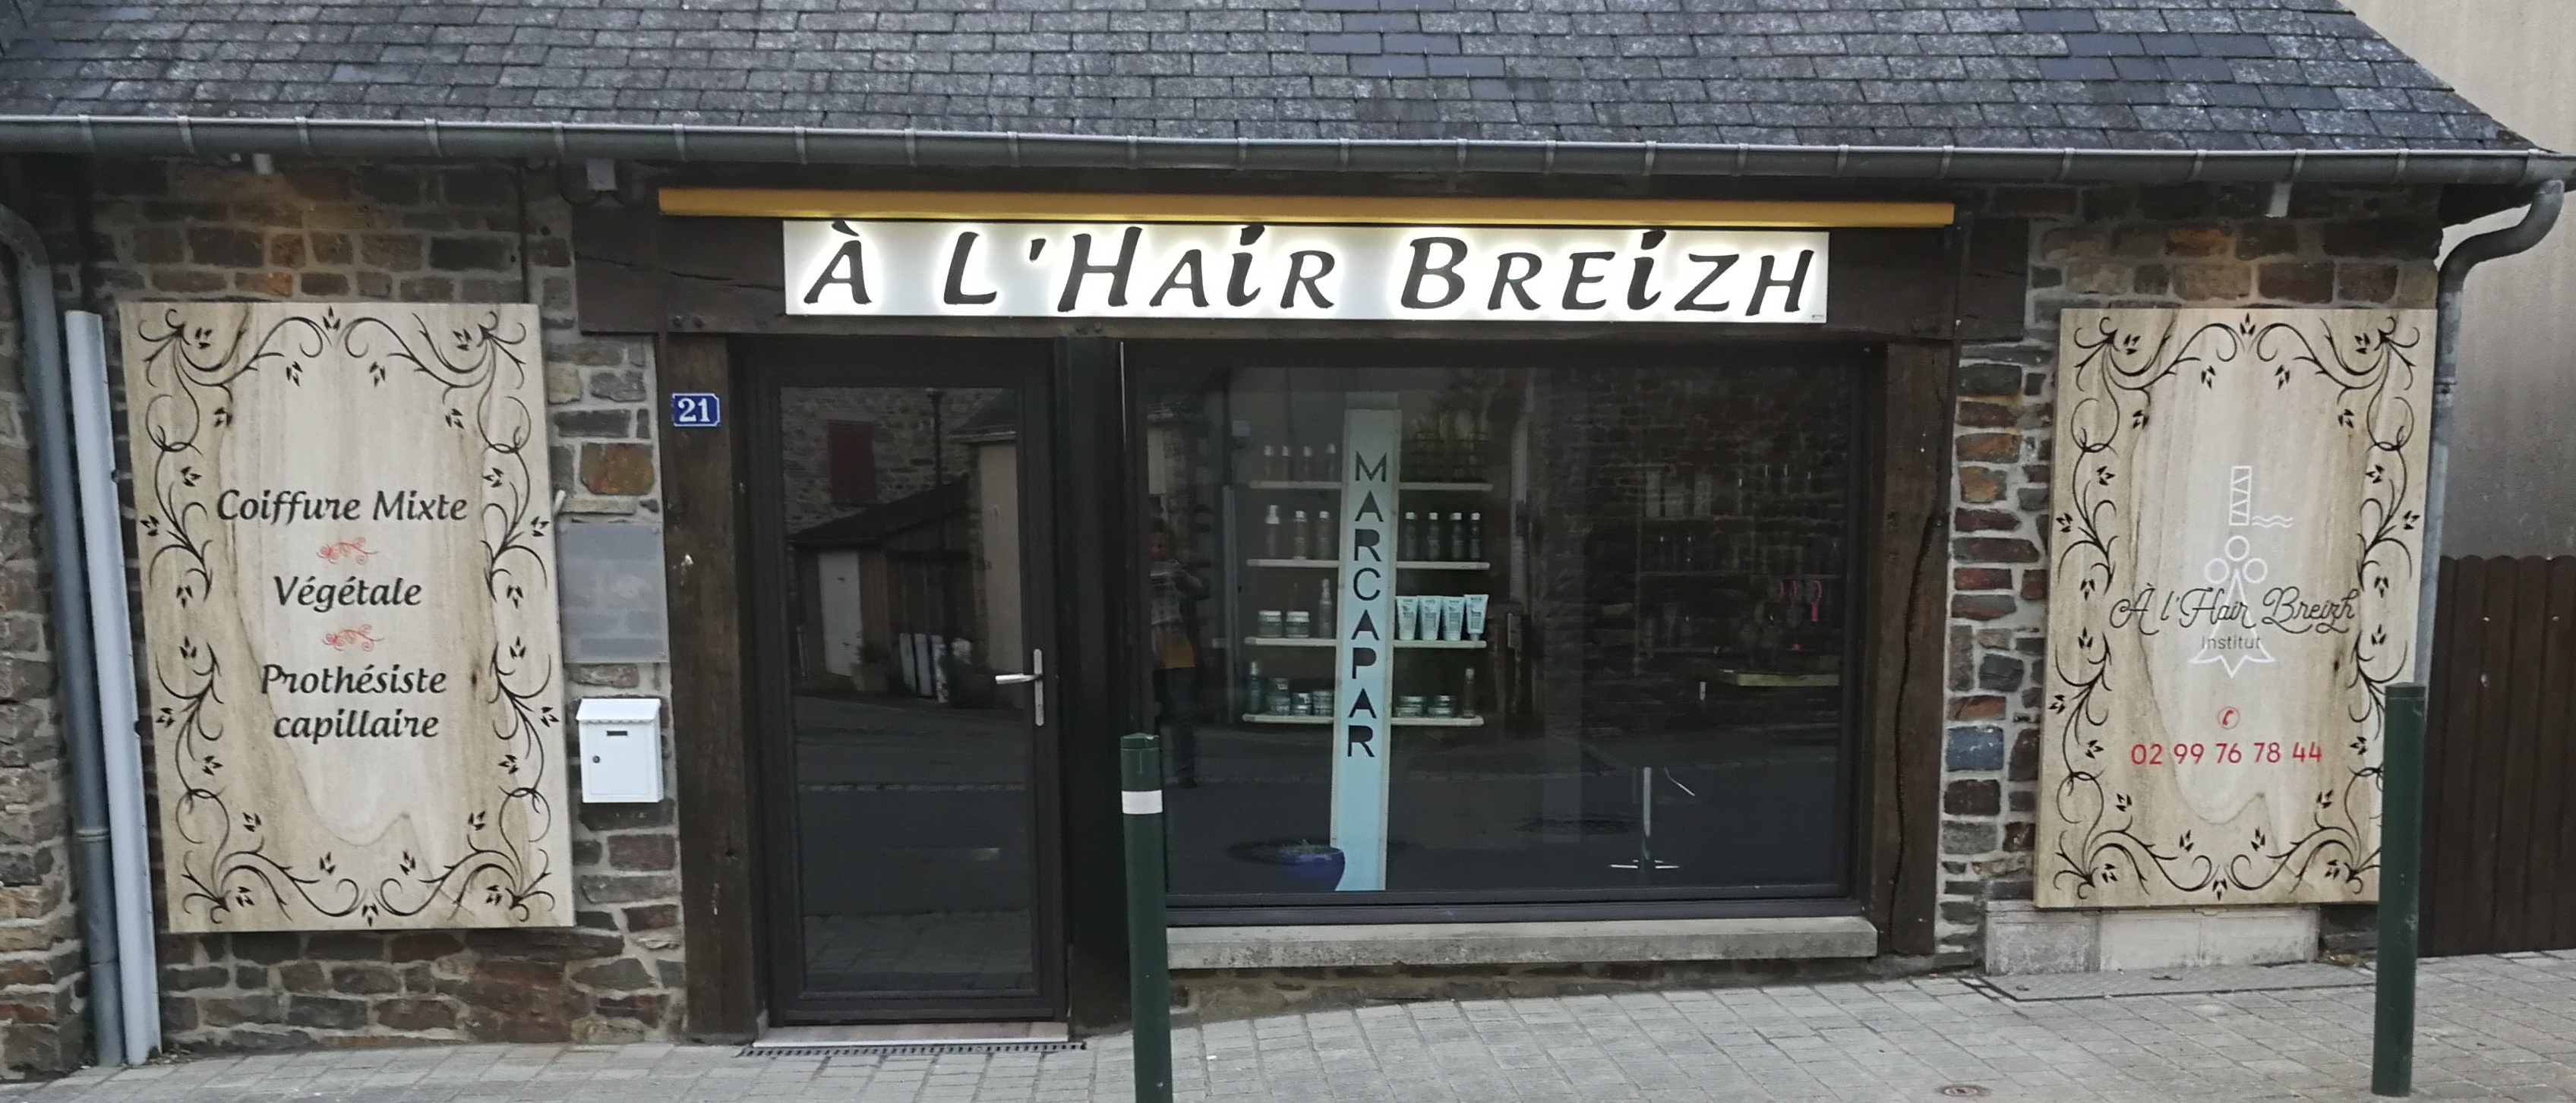 A l hair breizh Institut.jpg